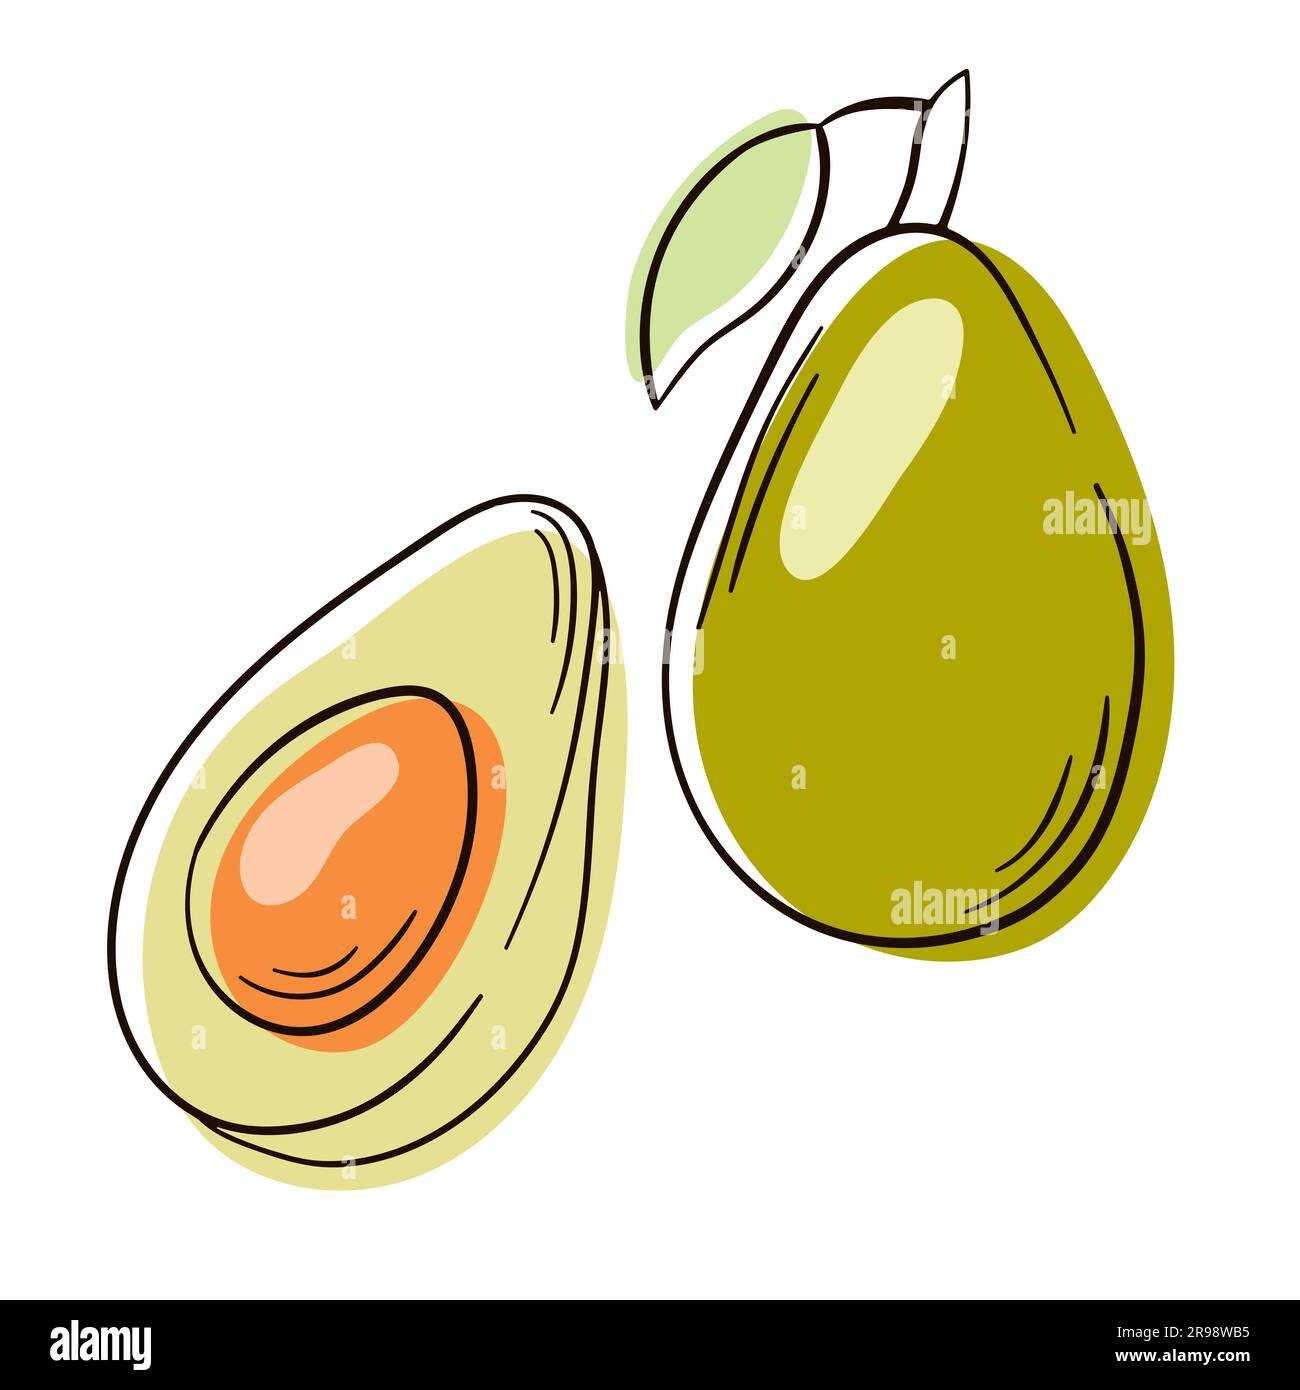 Intero e tagliato a metà avocado con buca. Icona della frutta di avocado. Avocado vettoriale disegnato a mano. Line art. Illustrazione Vettoriale